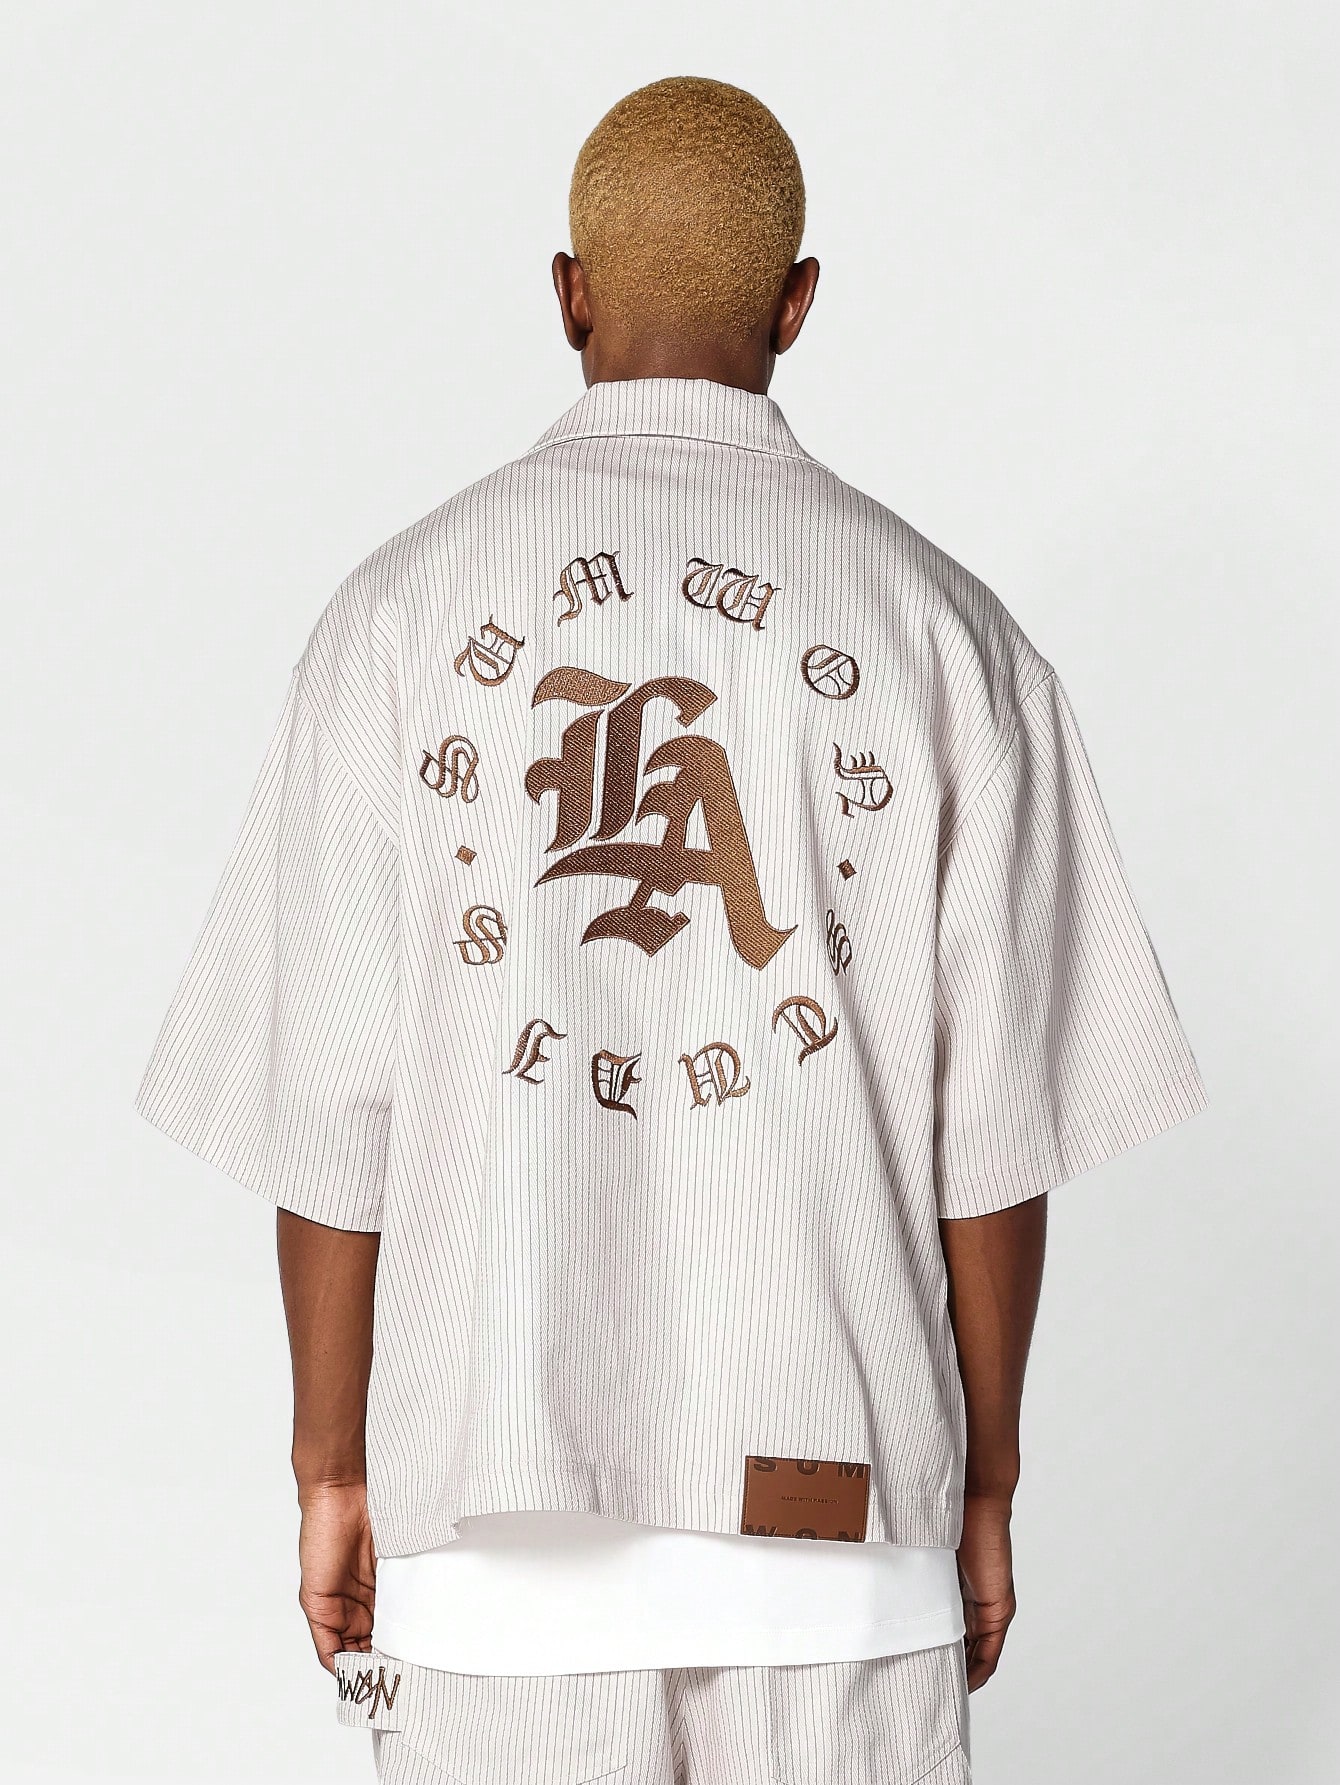 SUMWON Джинсовая рубашка в полоску свободного покроя с воротником Revere, абрикос цена и фото